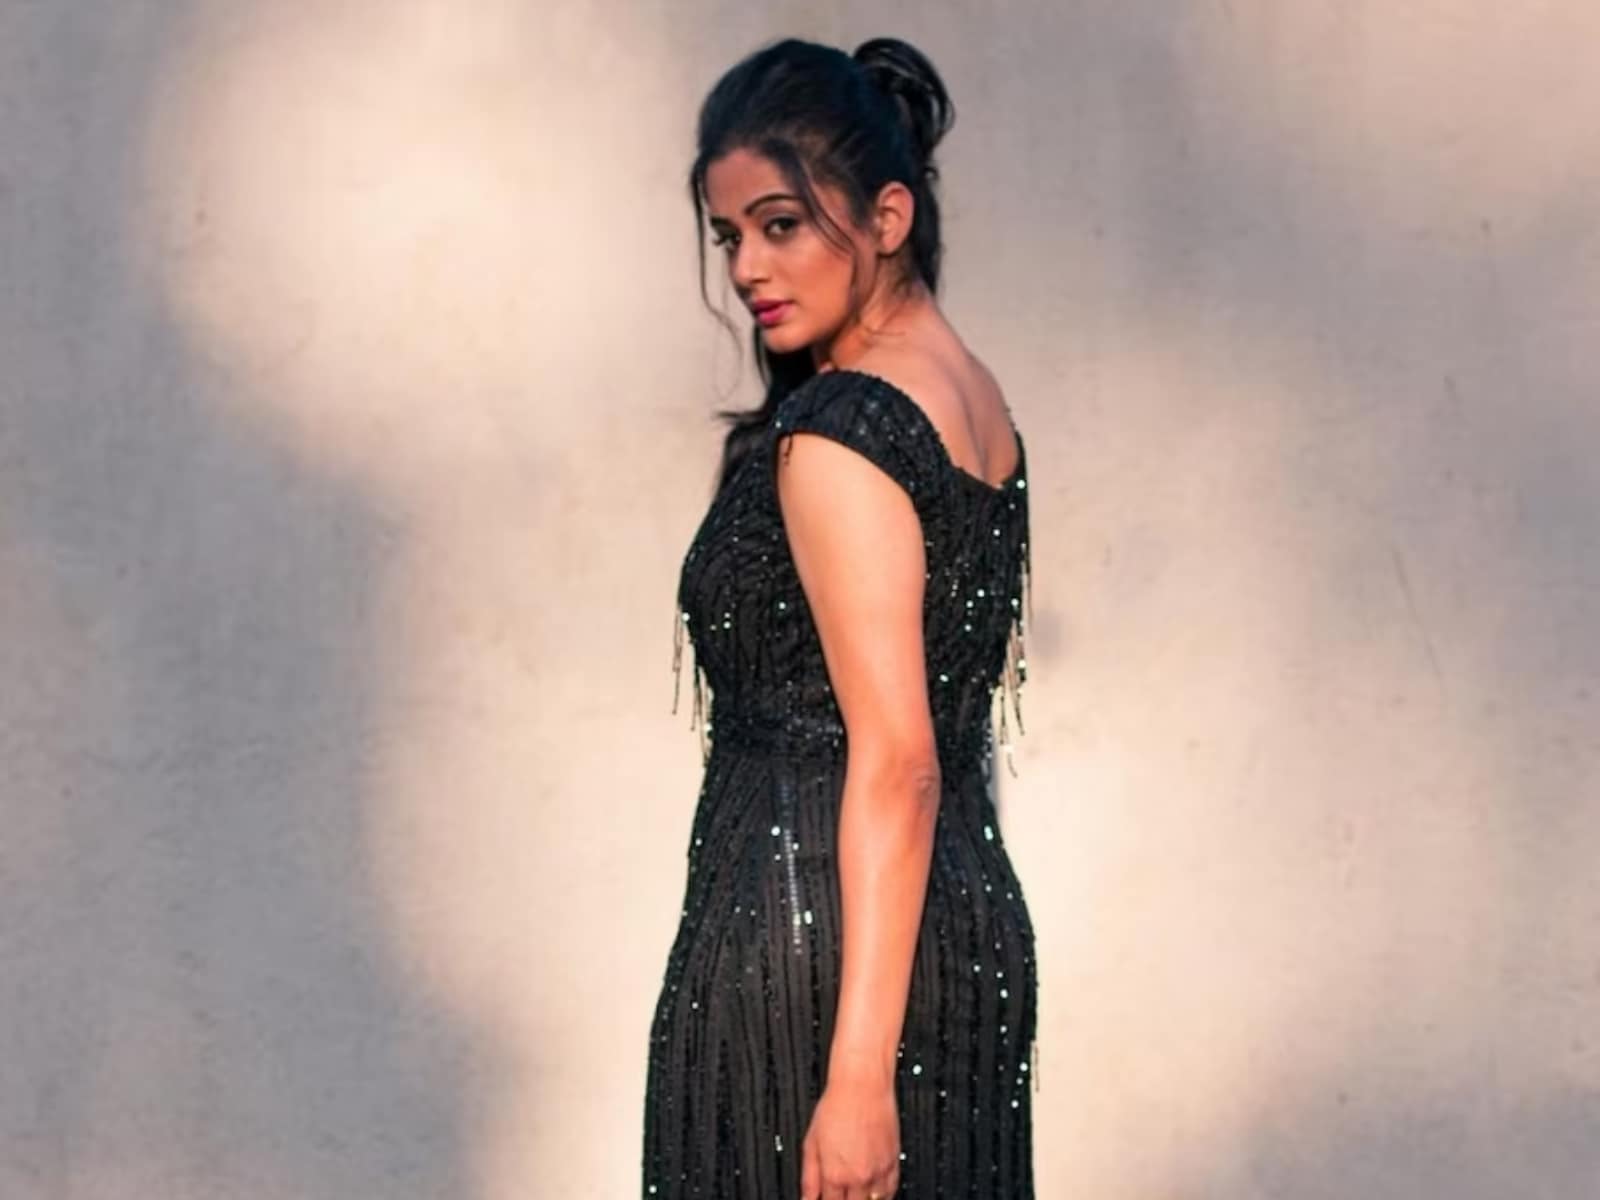 Priya Mani Sex - Actress Priyamani Looks Stunning In Black Gown, See Pics - News18